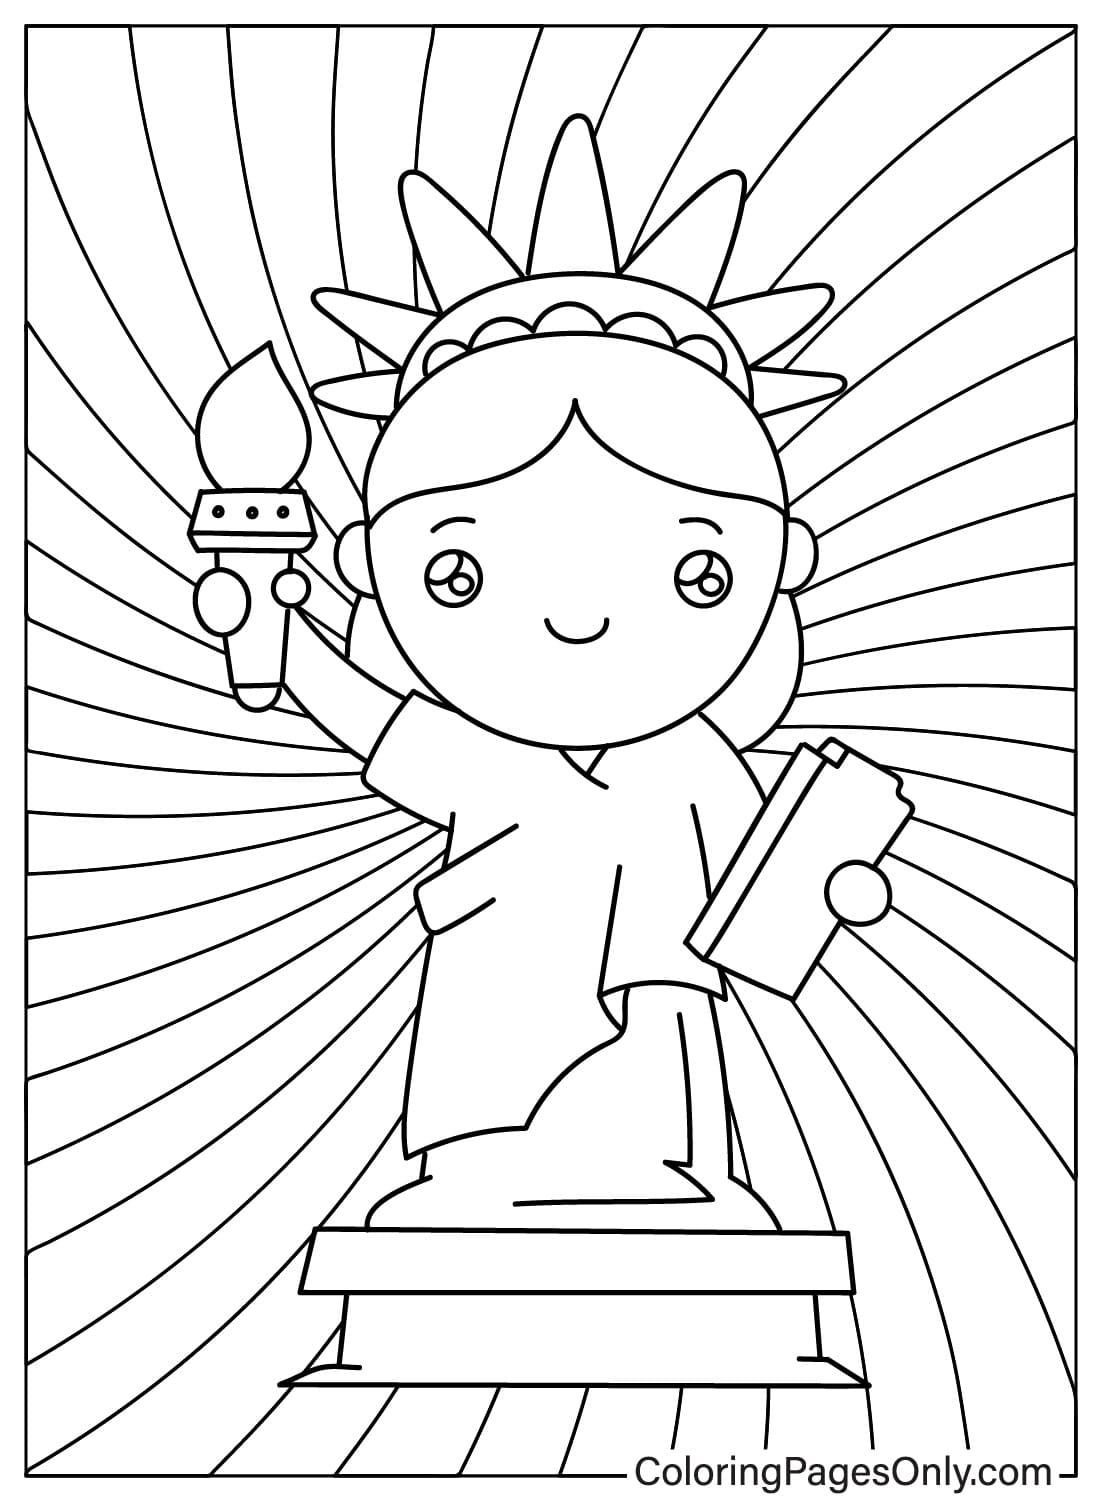 Раскраска Статуя Свободы в стиле чиби